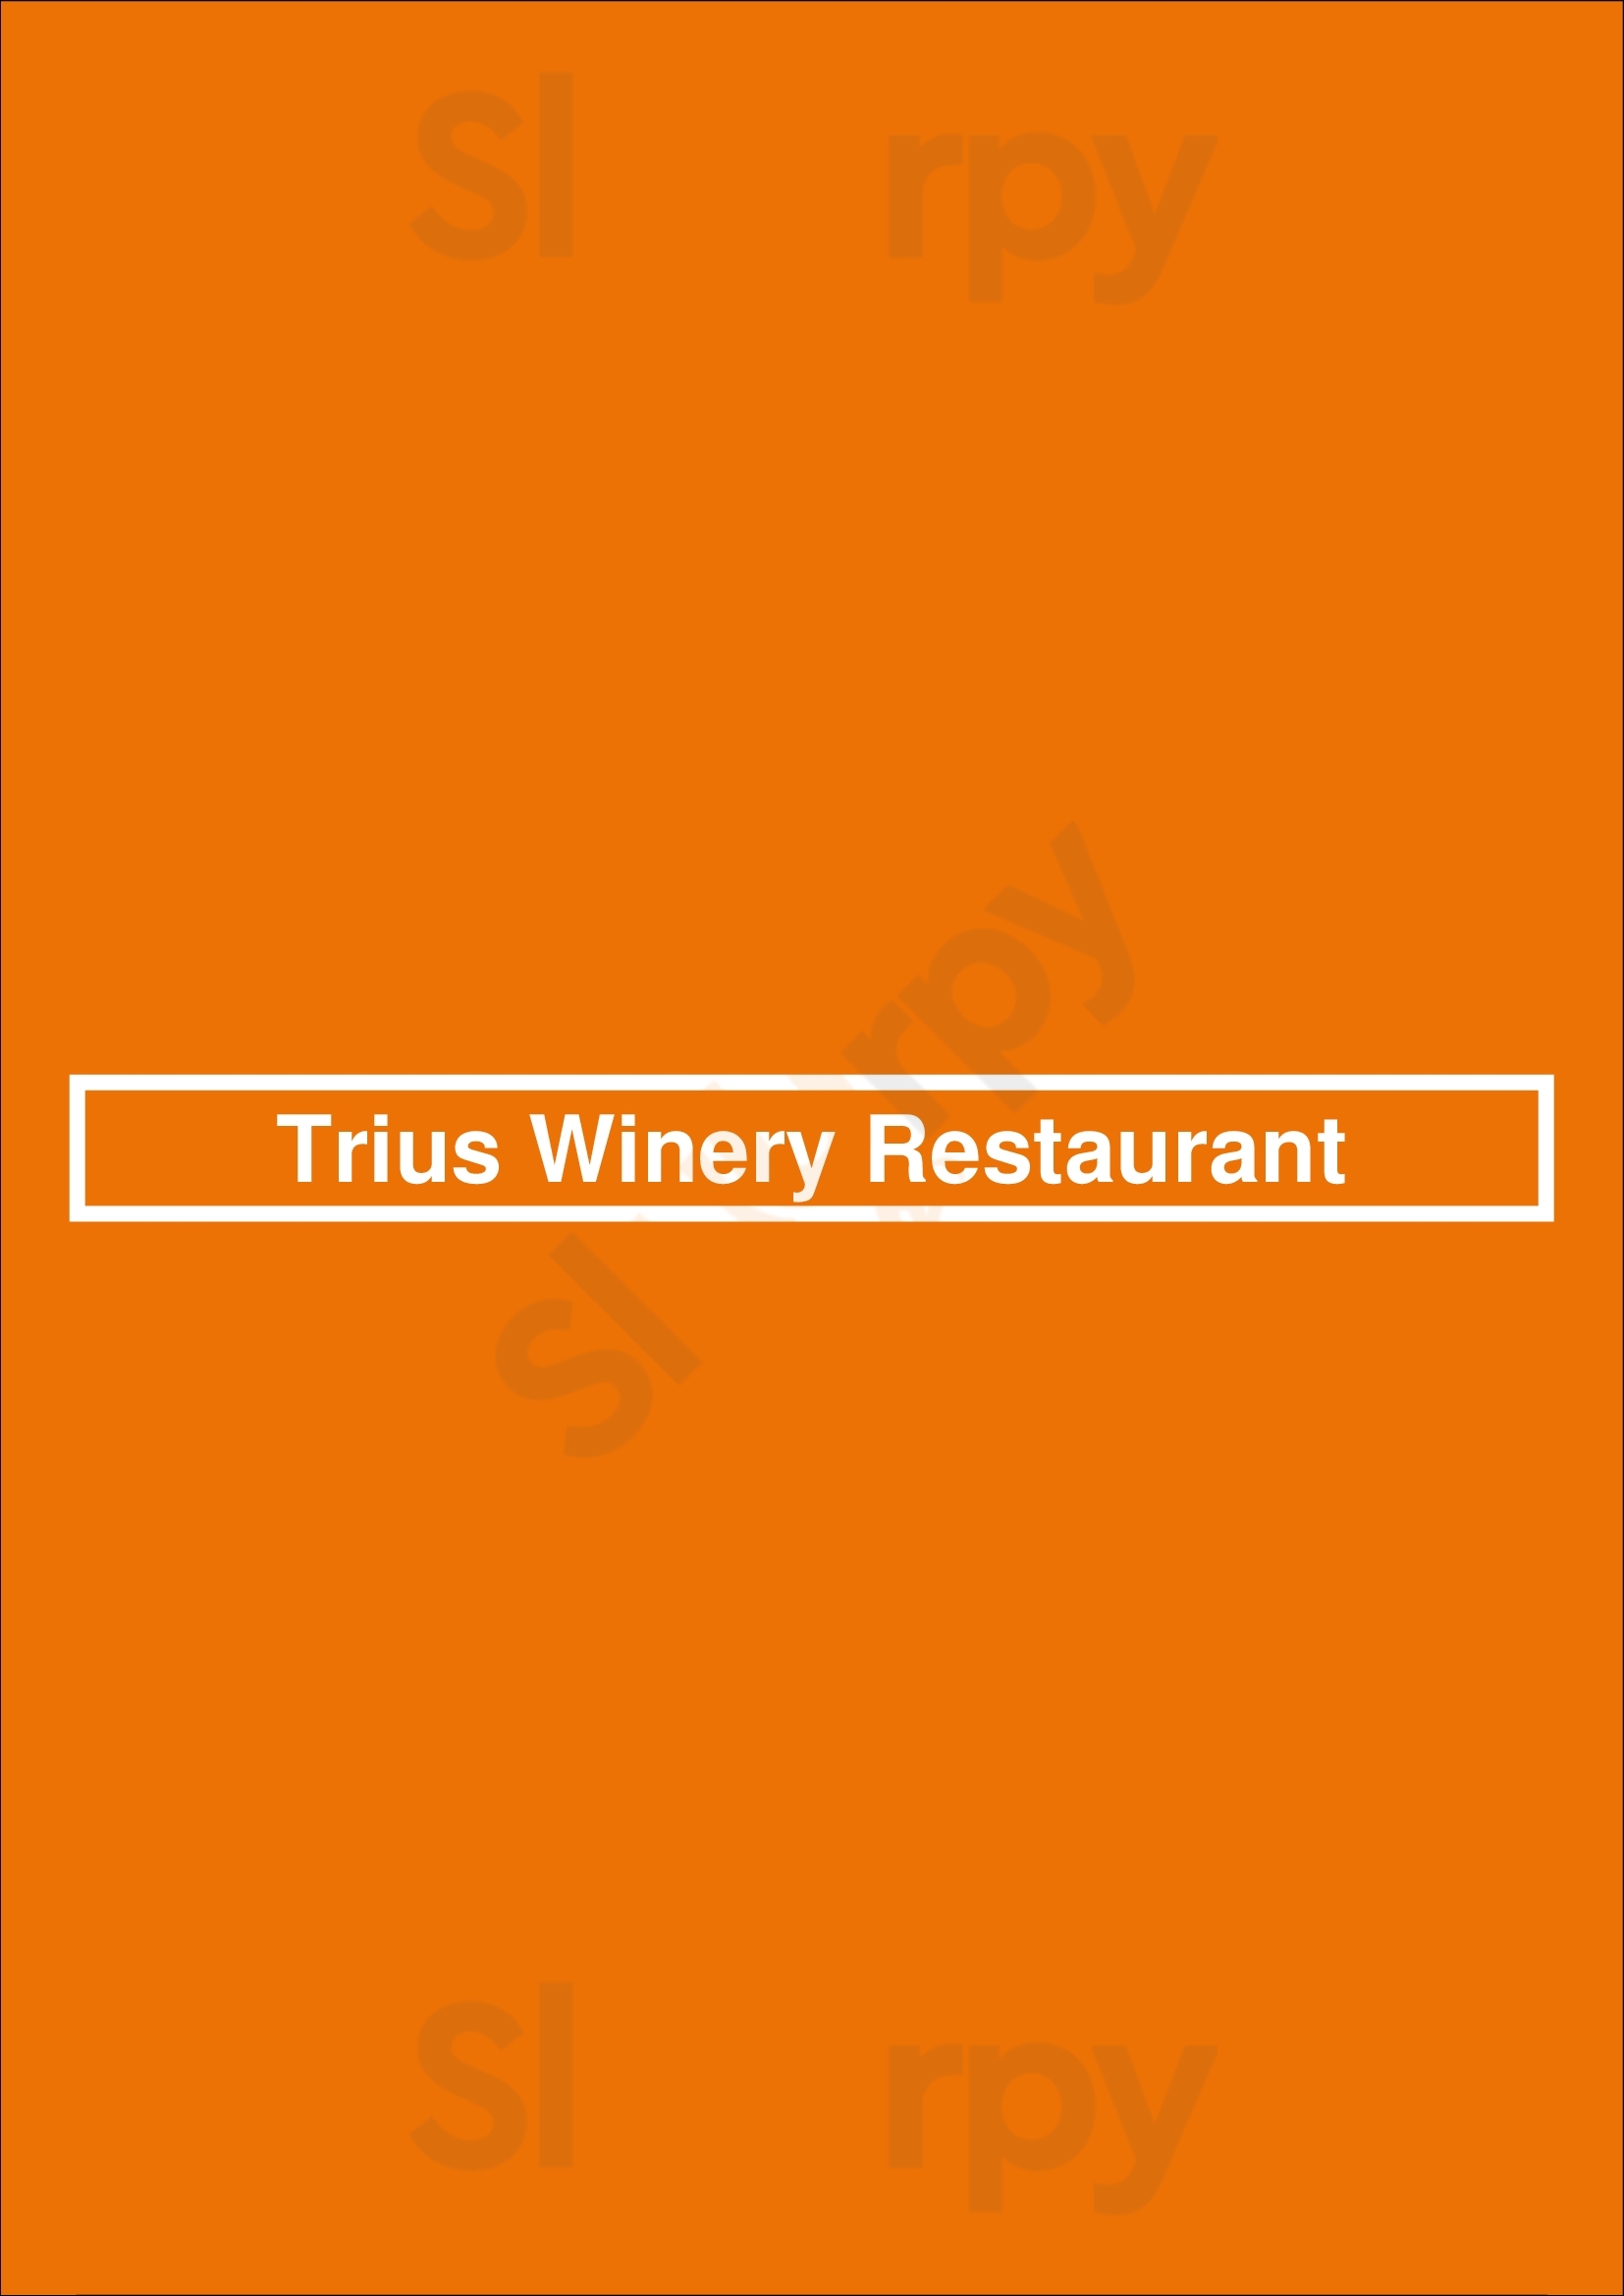 Trius Winery Restaurant Niagara-on-the-Lake Menu - 1